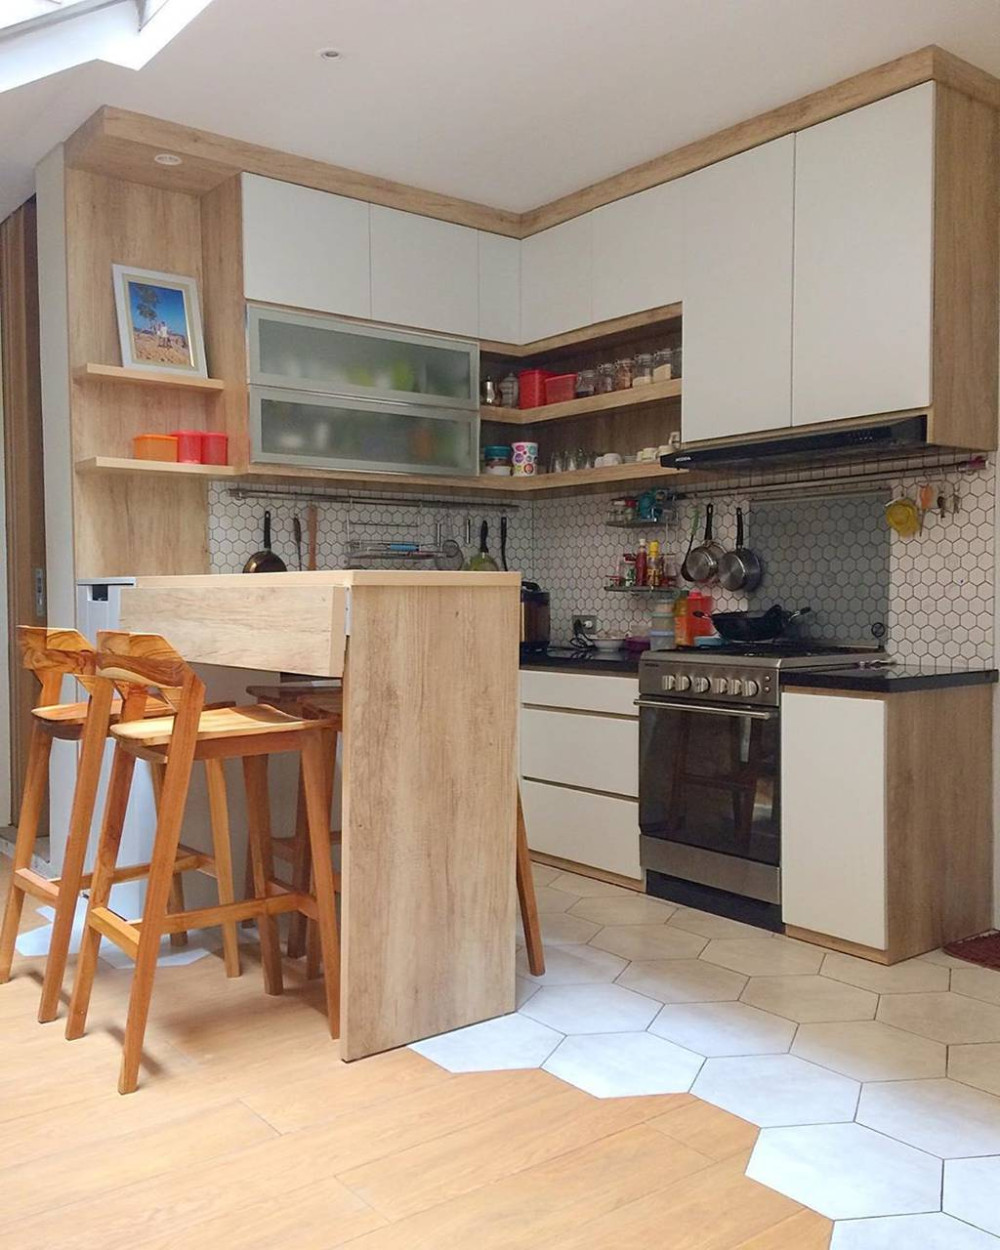 kitchen set minimalis dapur kecil 2020 - best kitchen ...